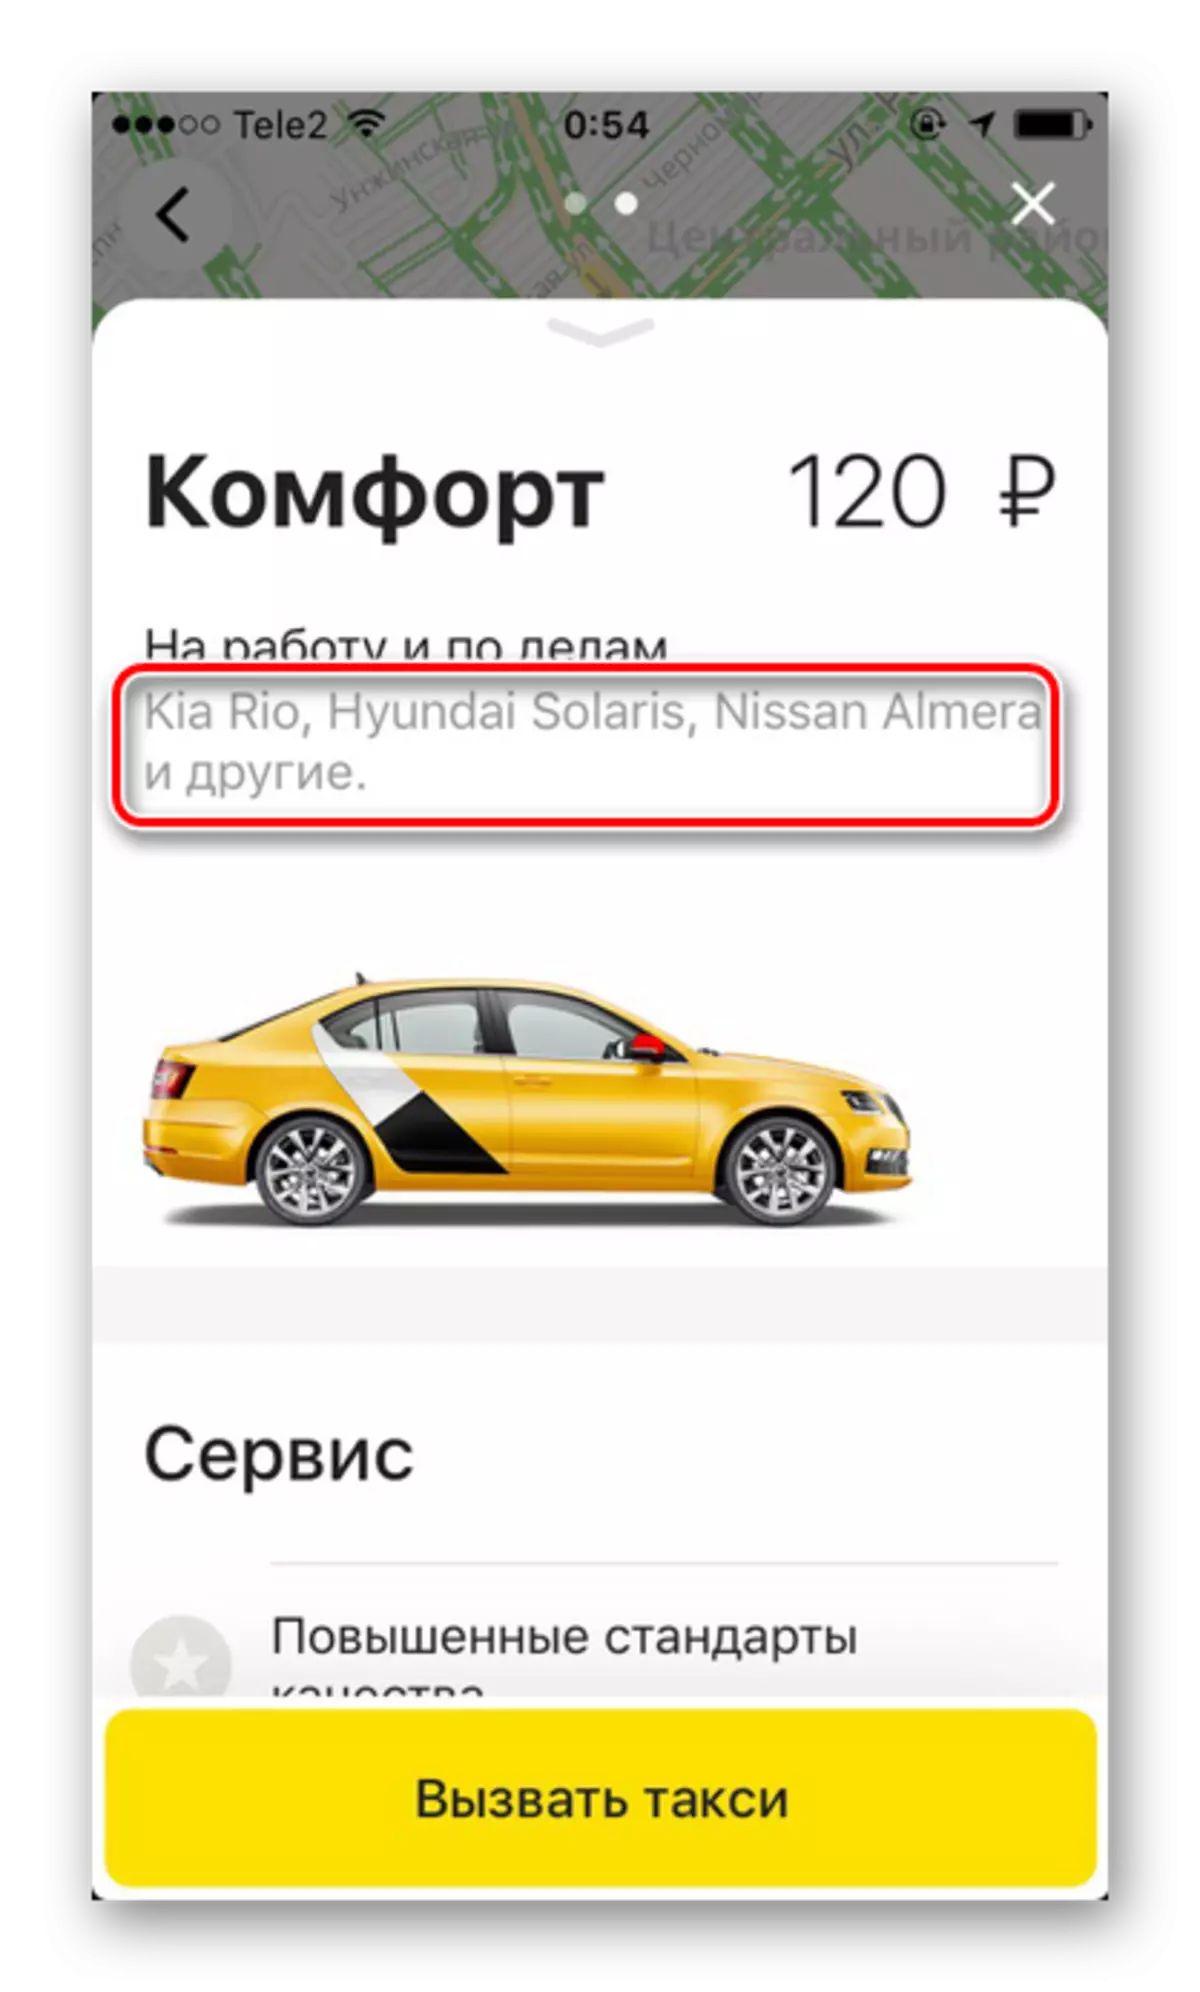 Masjine merken yn it taryf komfort yn Yandex.Taxi-applikaasje op 'e iPhone